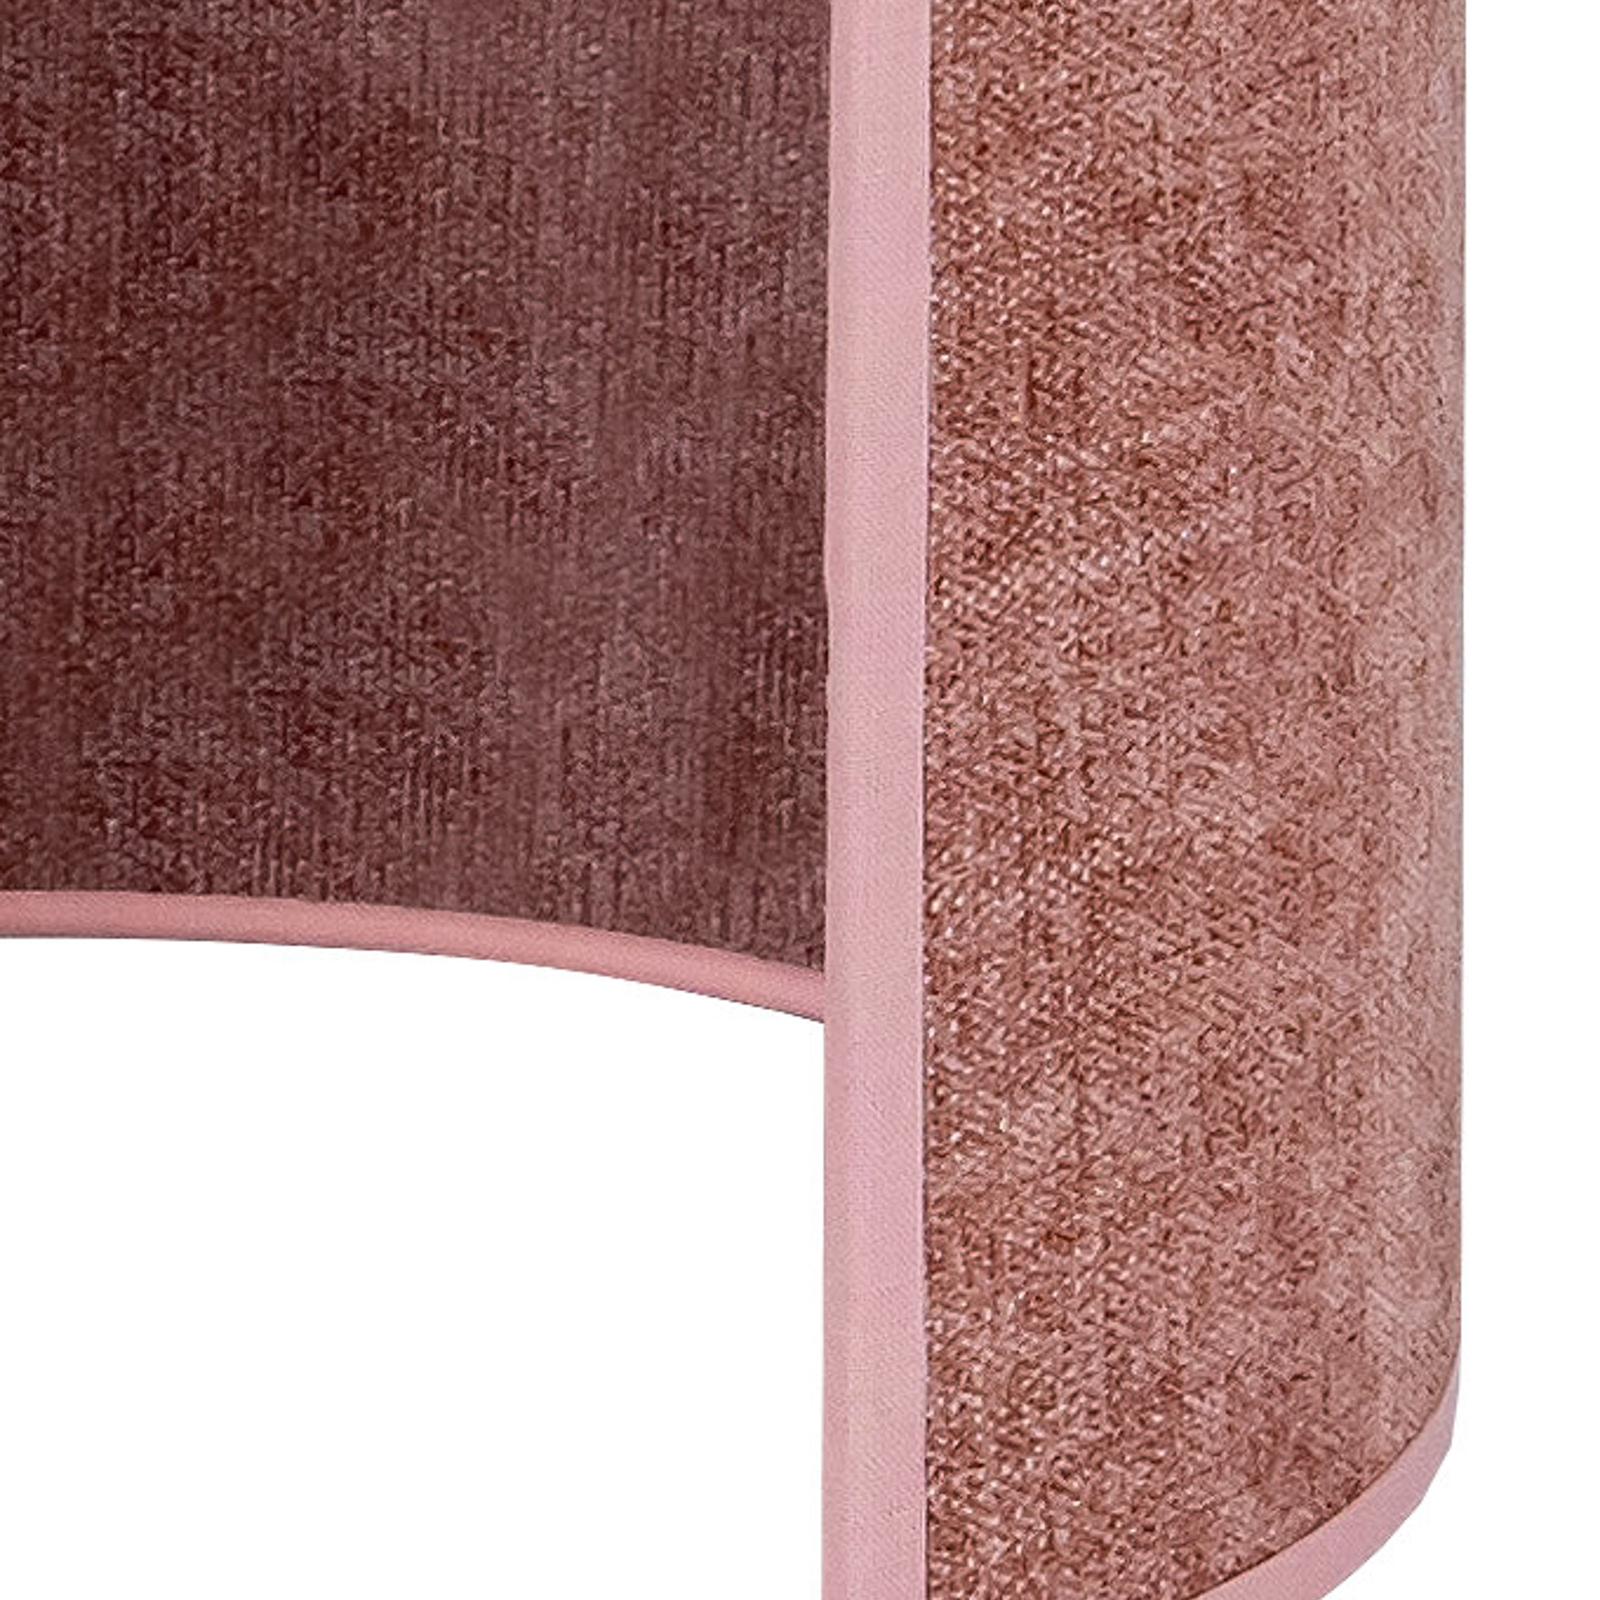 Euluna vegglampe Celine, rosa, chenillestoff, høyde 24 cm